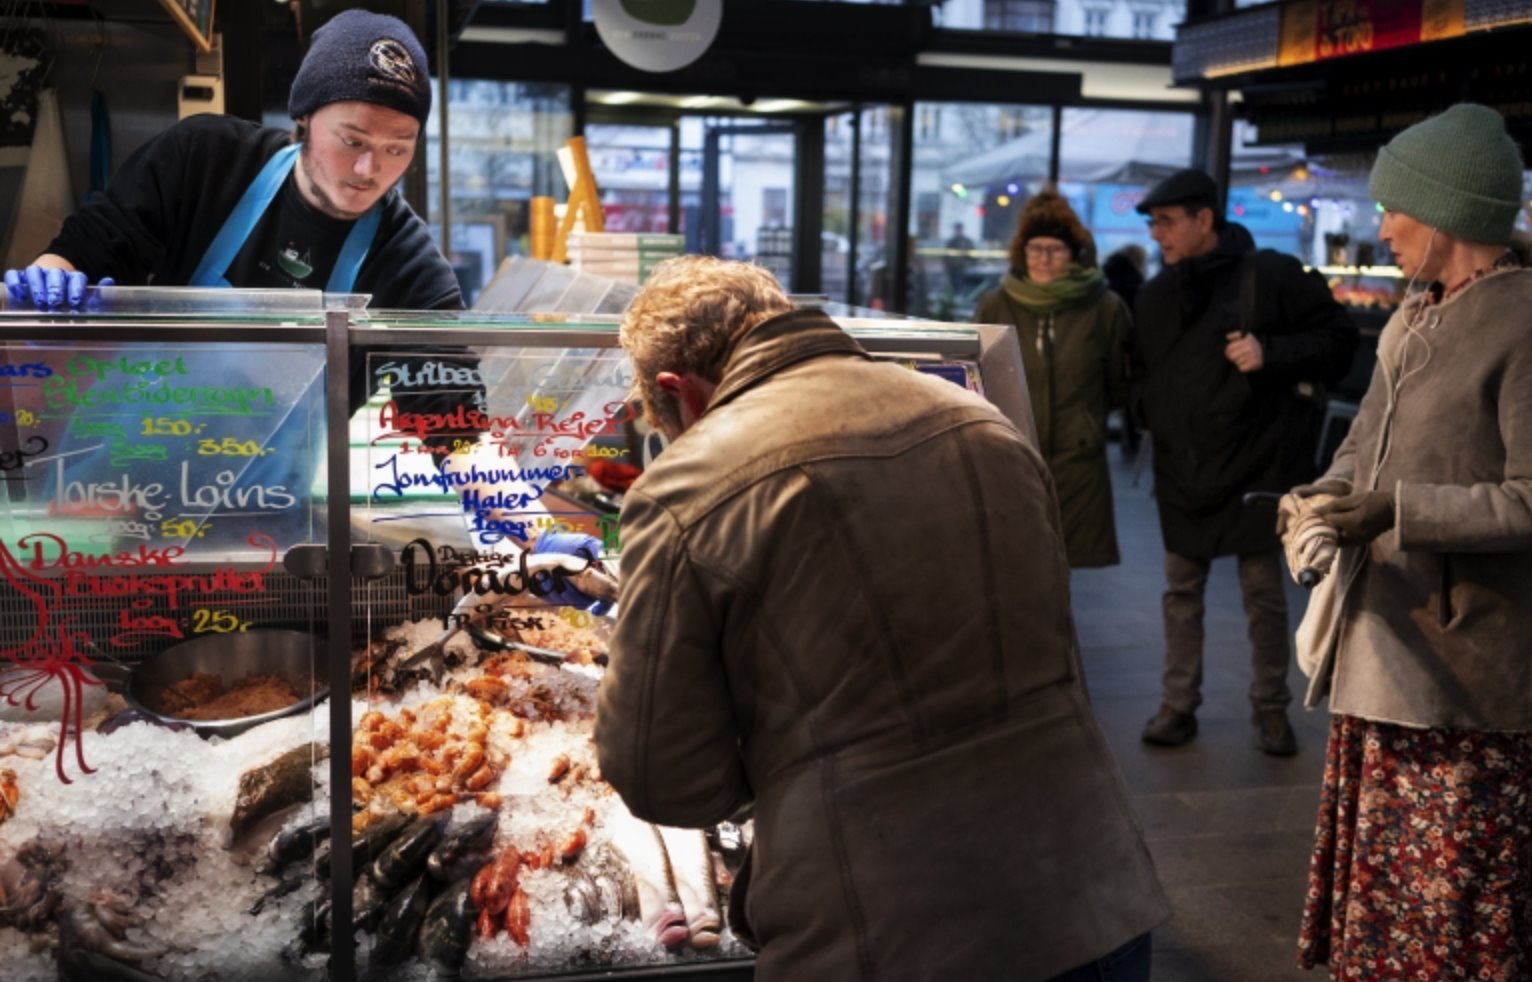 Pessoas visitando mercados públicos e lojas não precisam mais usar máscaras na Dinamarca